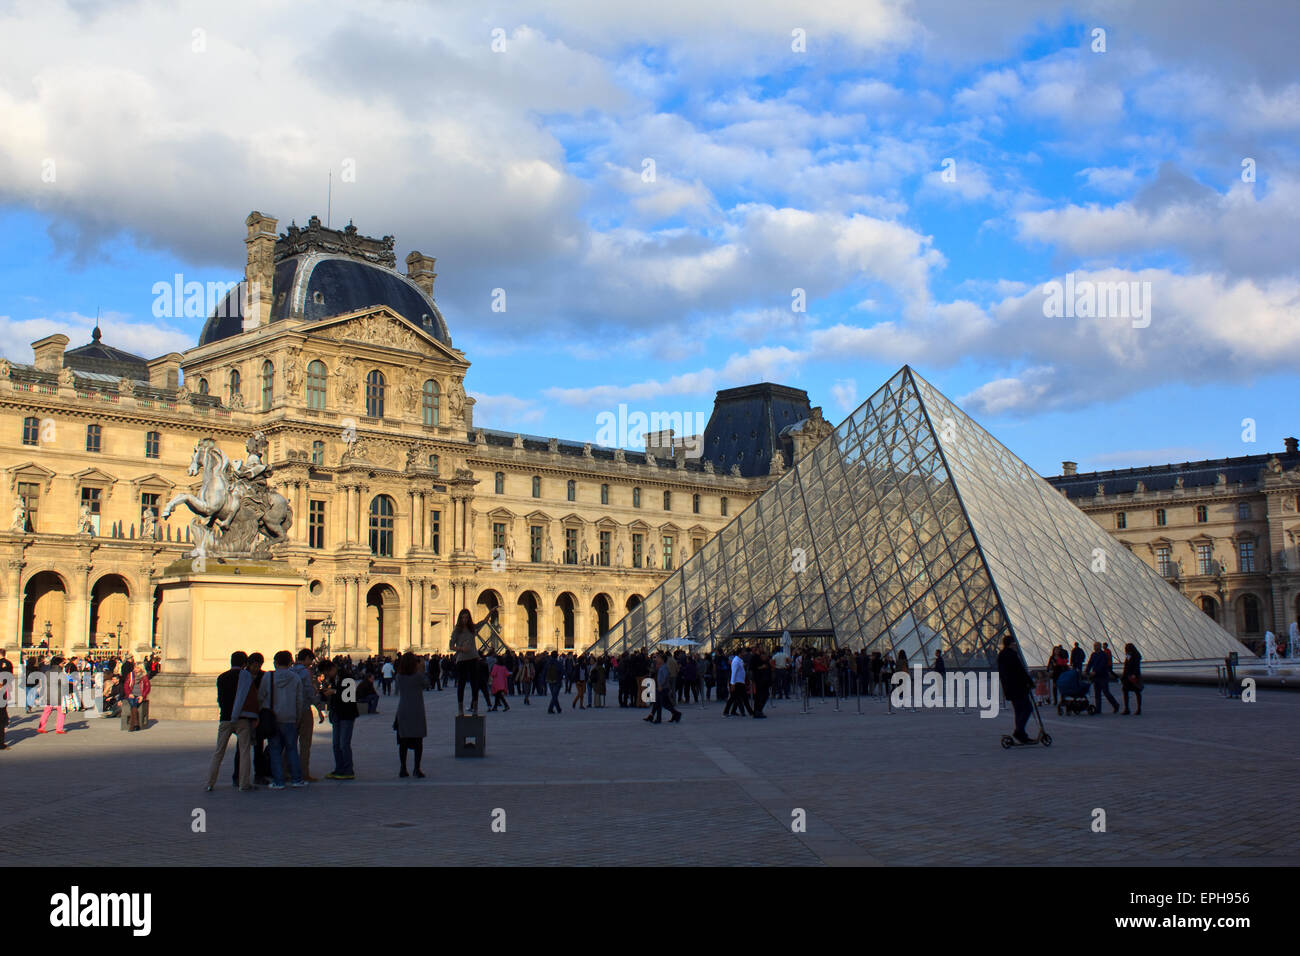 Louvre museum in Paris Stock Photo